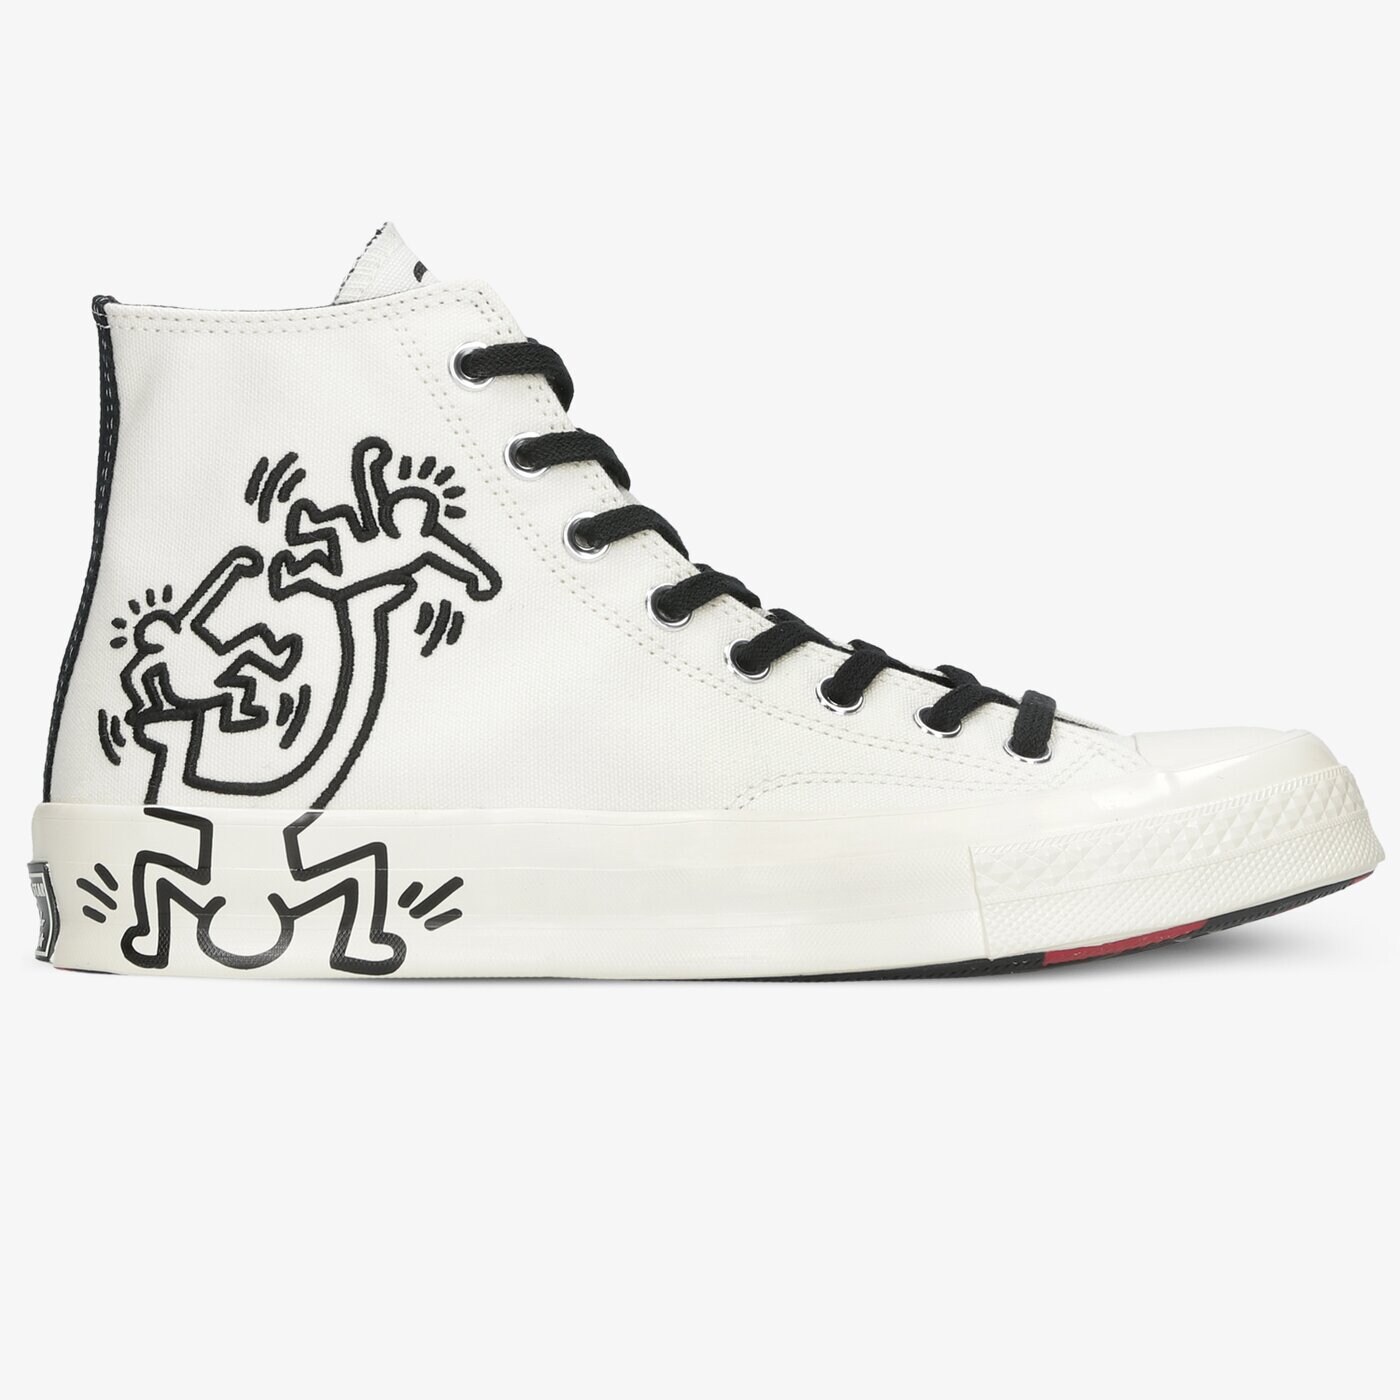 CONVERSE CHUCK 70 171858C Vīriešiem Krāsa balta ▷ Stilīgi Sporta apavi ▷  Converse Apavi Interneta veikalā  ▷▷